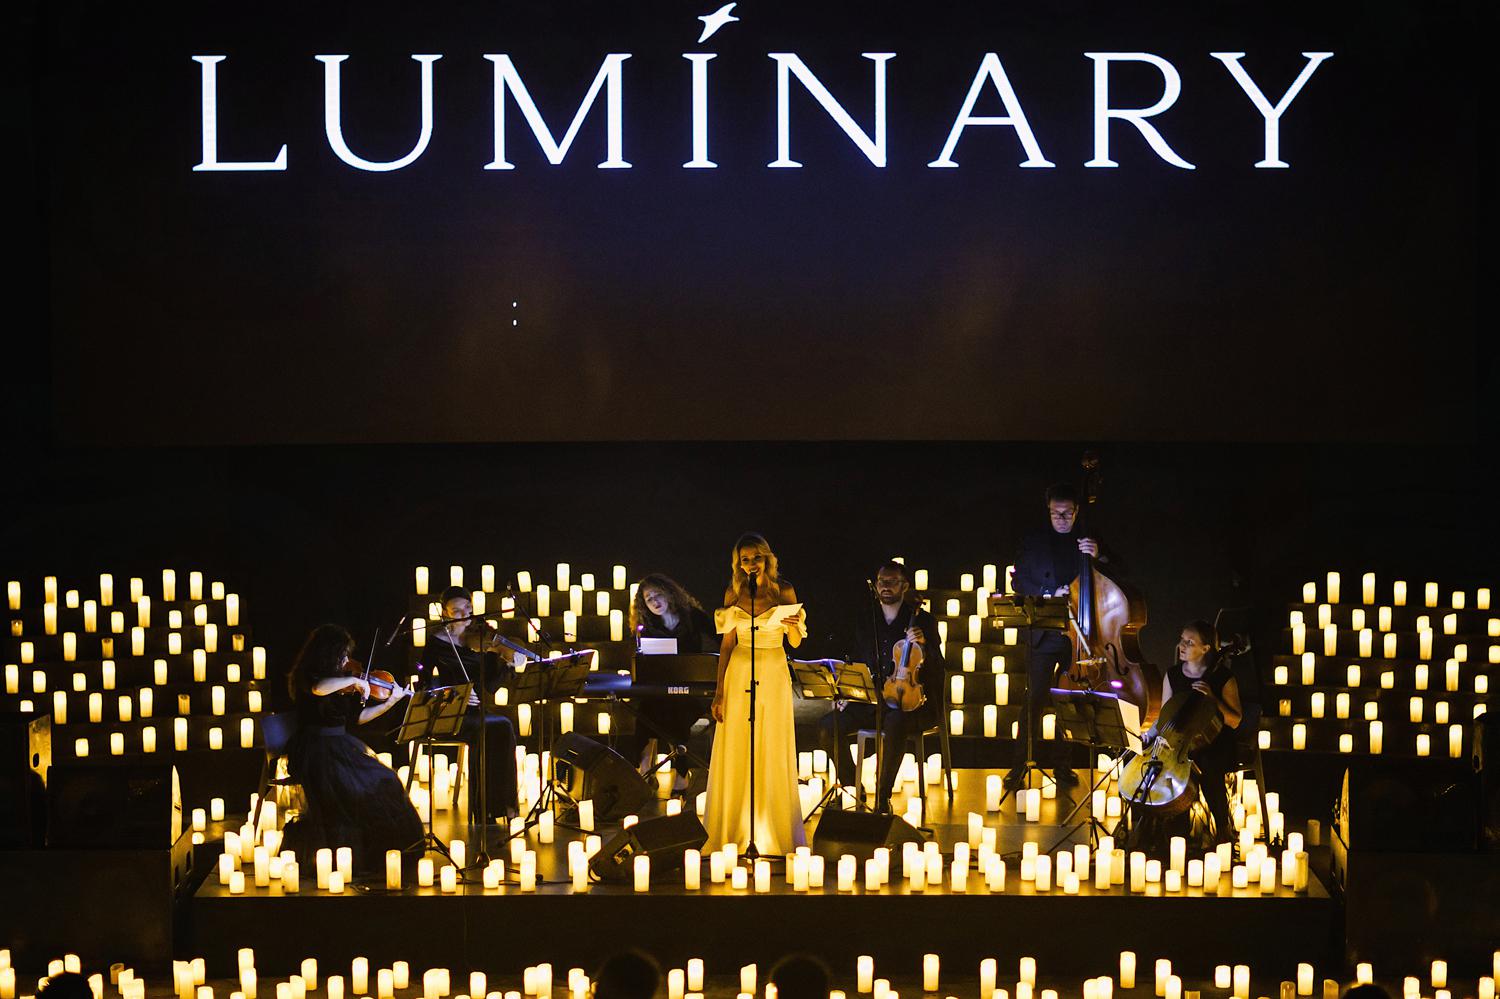 Luminary 1000 свечей. Концерт 1000 свечей. Концерт 1000 свечей фото Luminary. Люминари тысяча свечей Ессентуки.